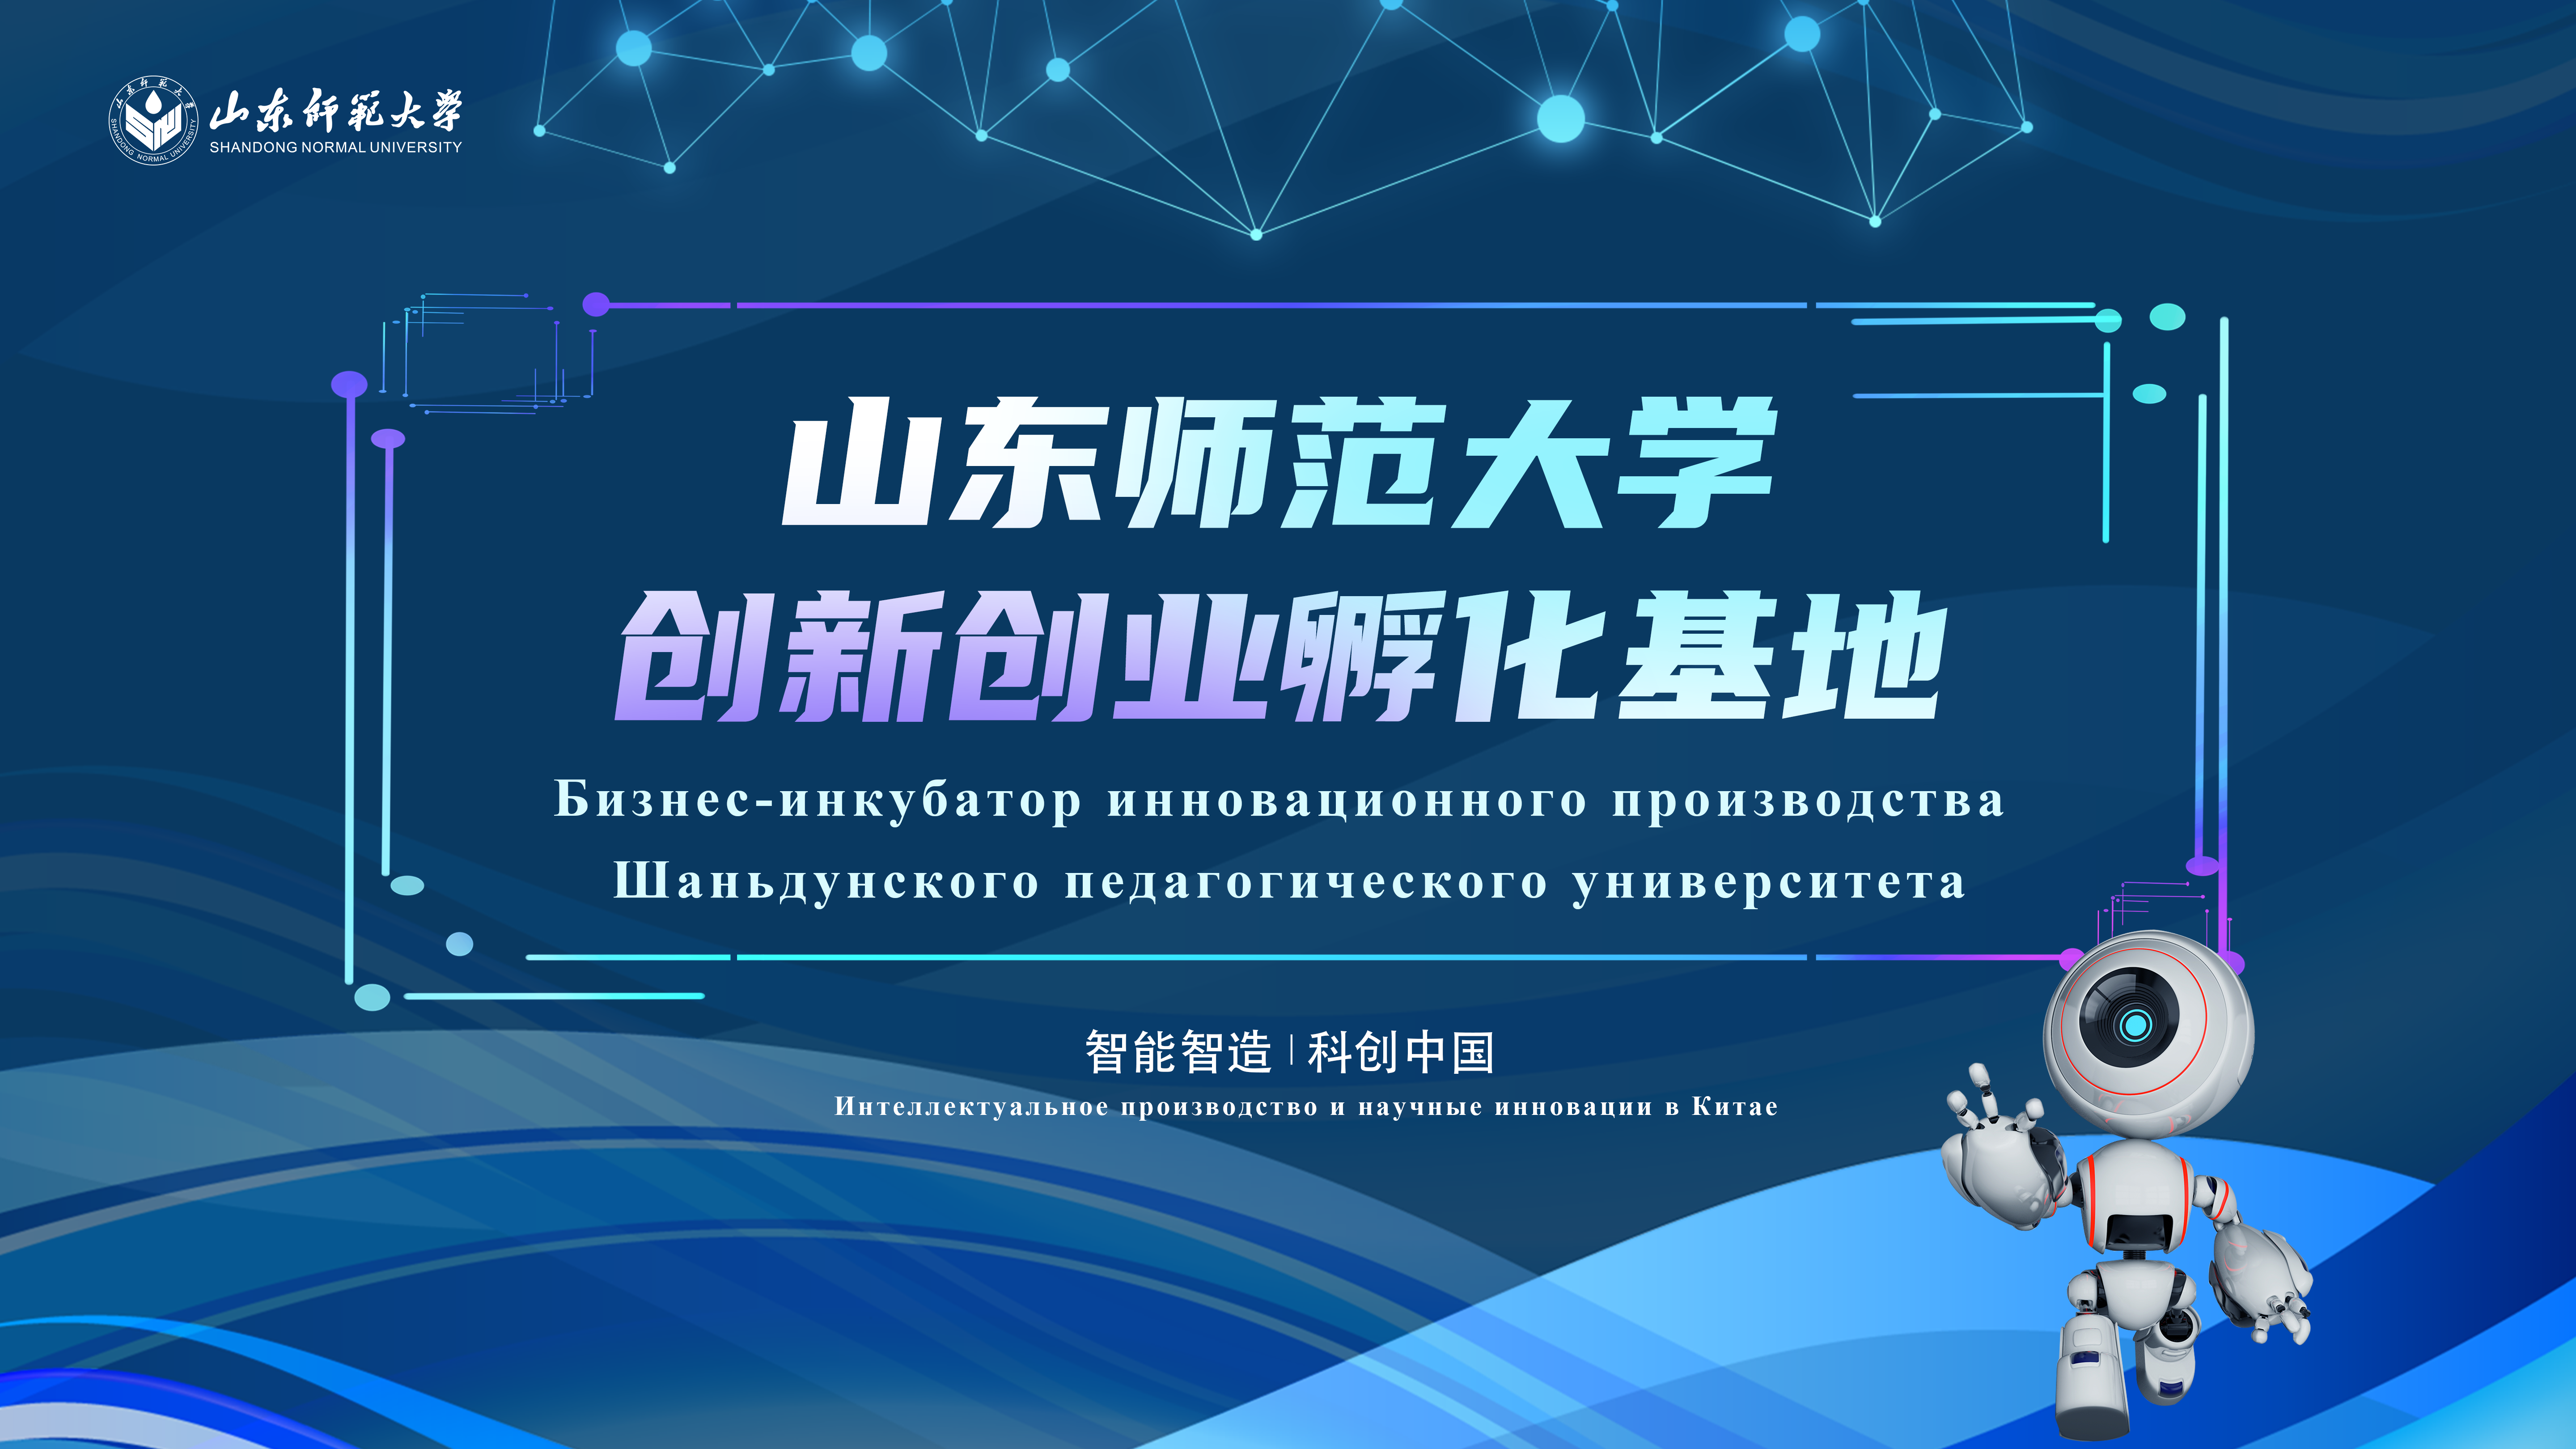 База бизнес-инкубатора для студентов Шаньдунского педагогического университета